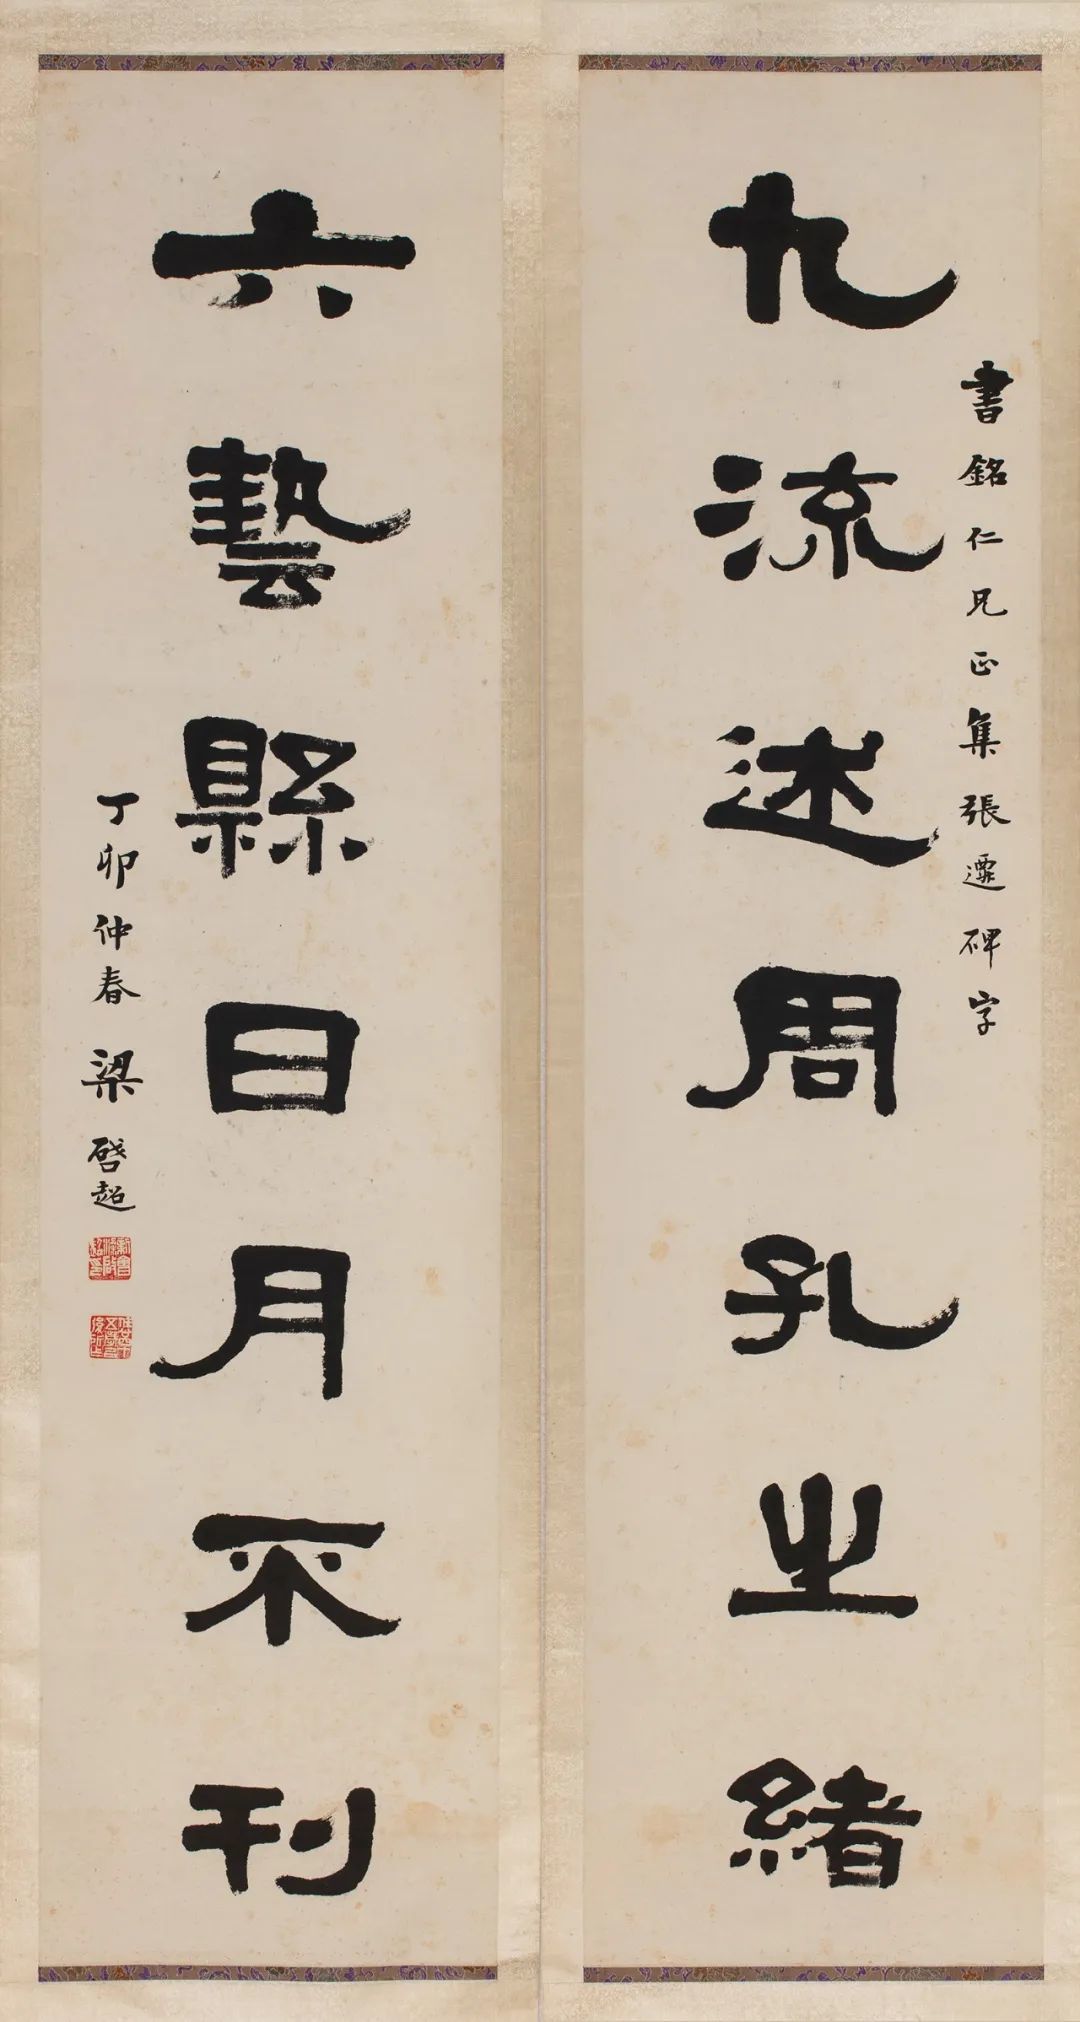 梁启超隶书七言联，130cm×31.8cm×2，1927年，山东大学博物馆藏